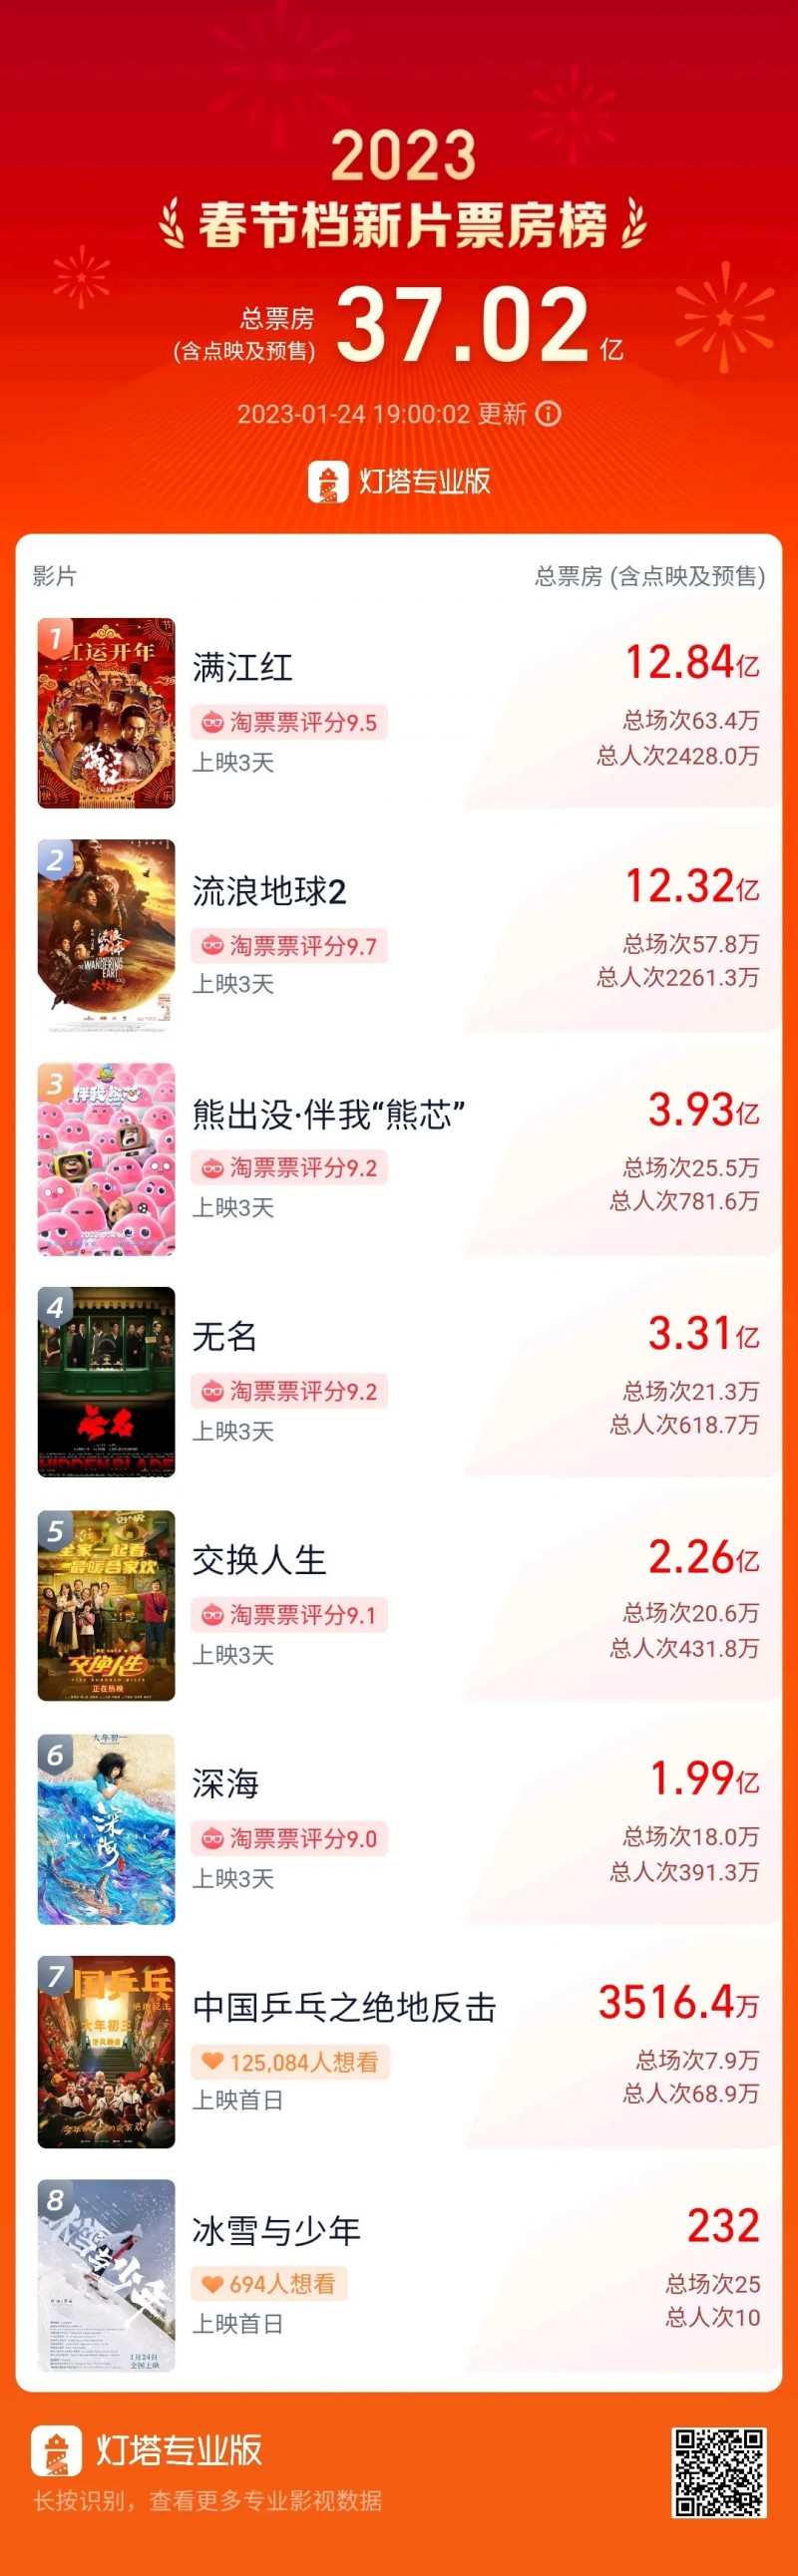 中国电影市场迎来开门红 春节档有3部影片票房均破2亿